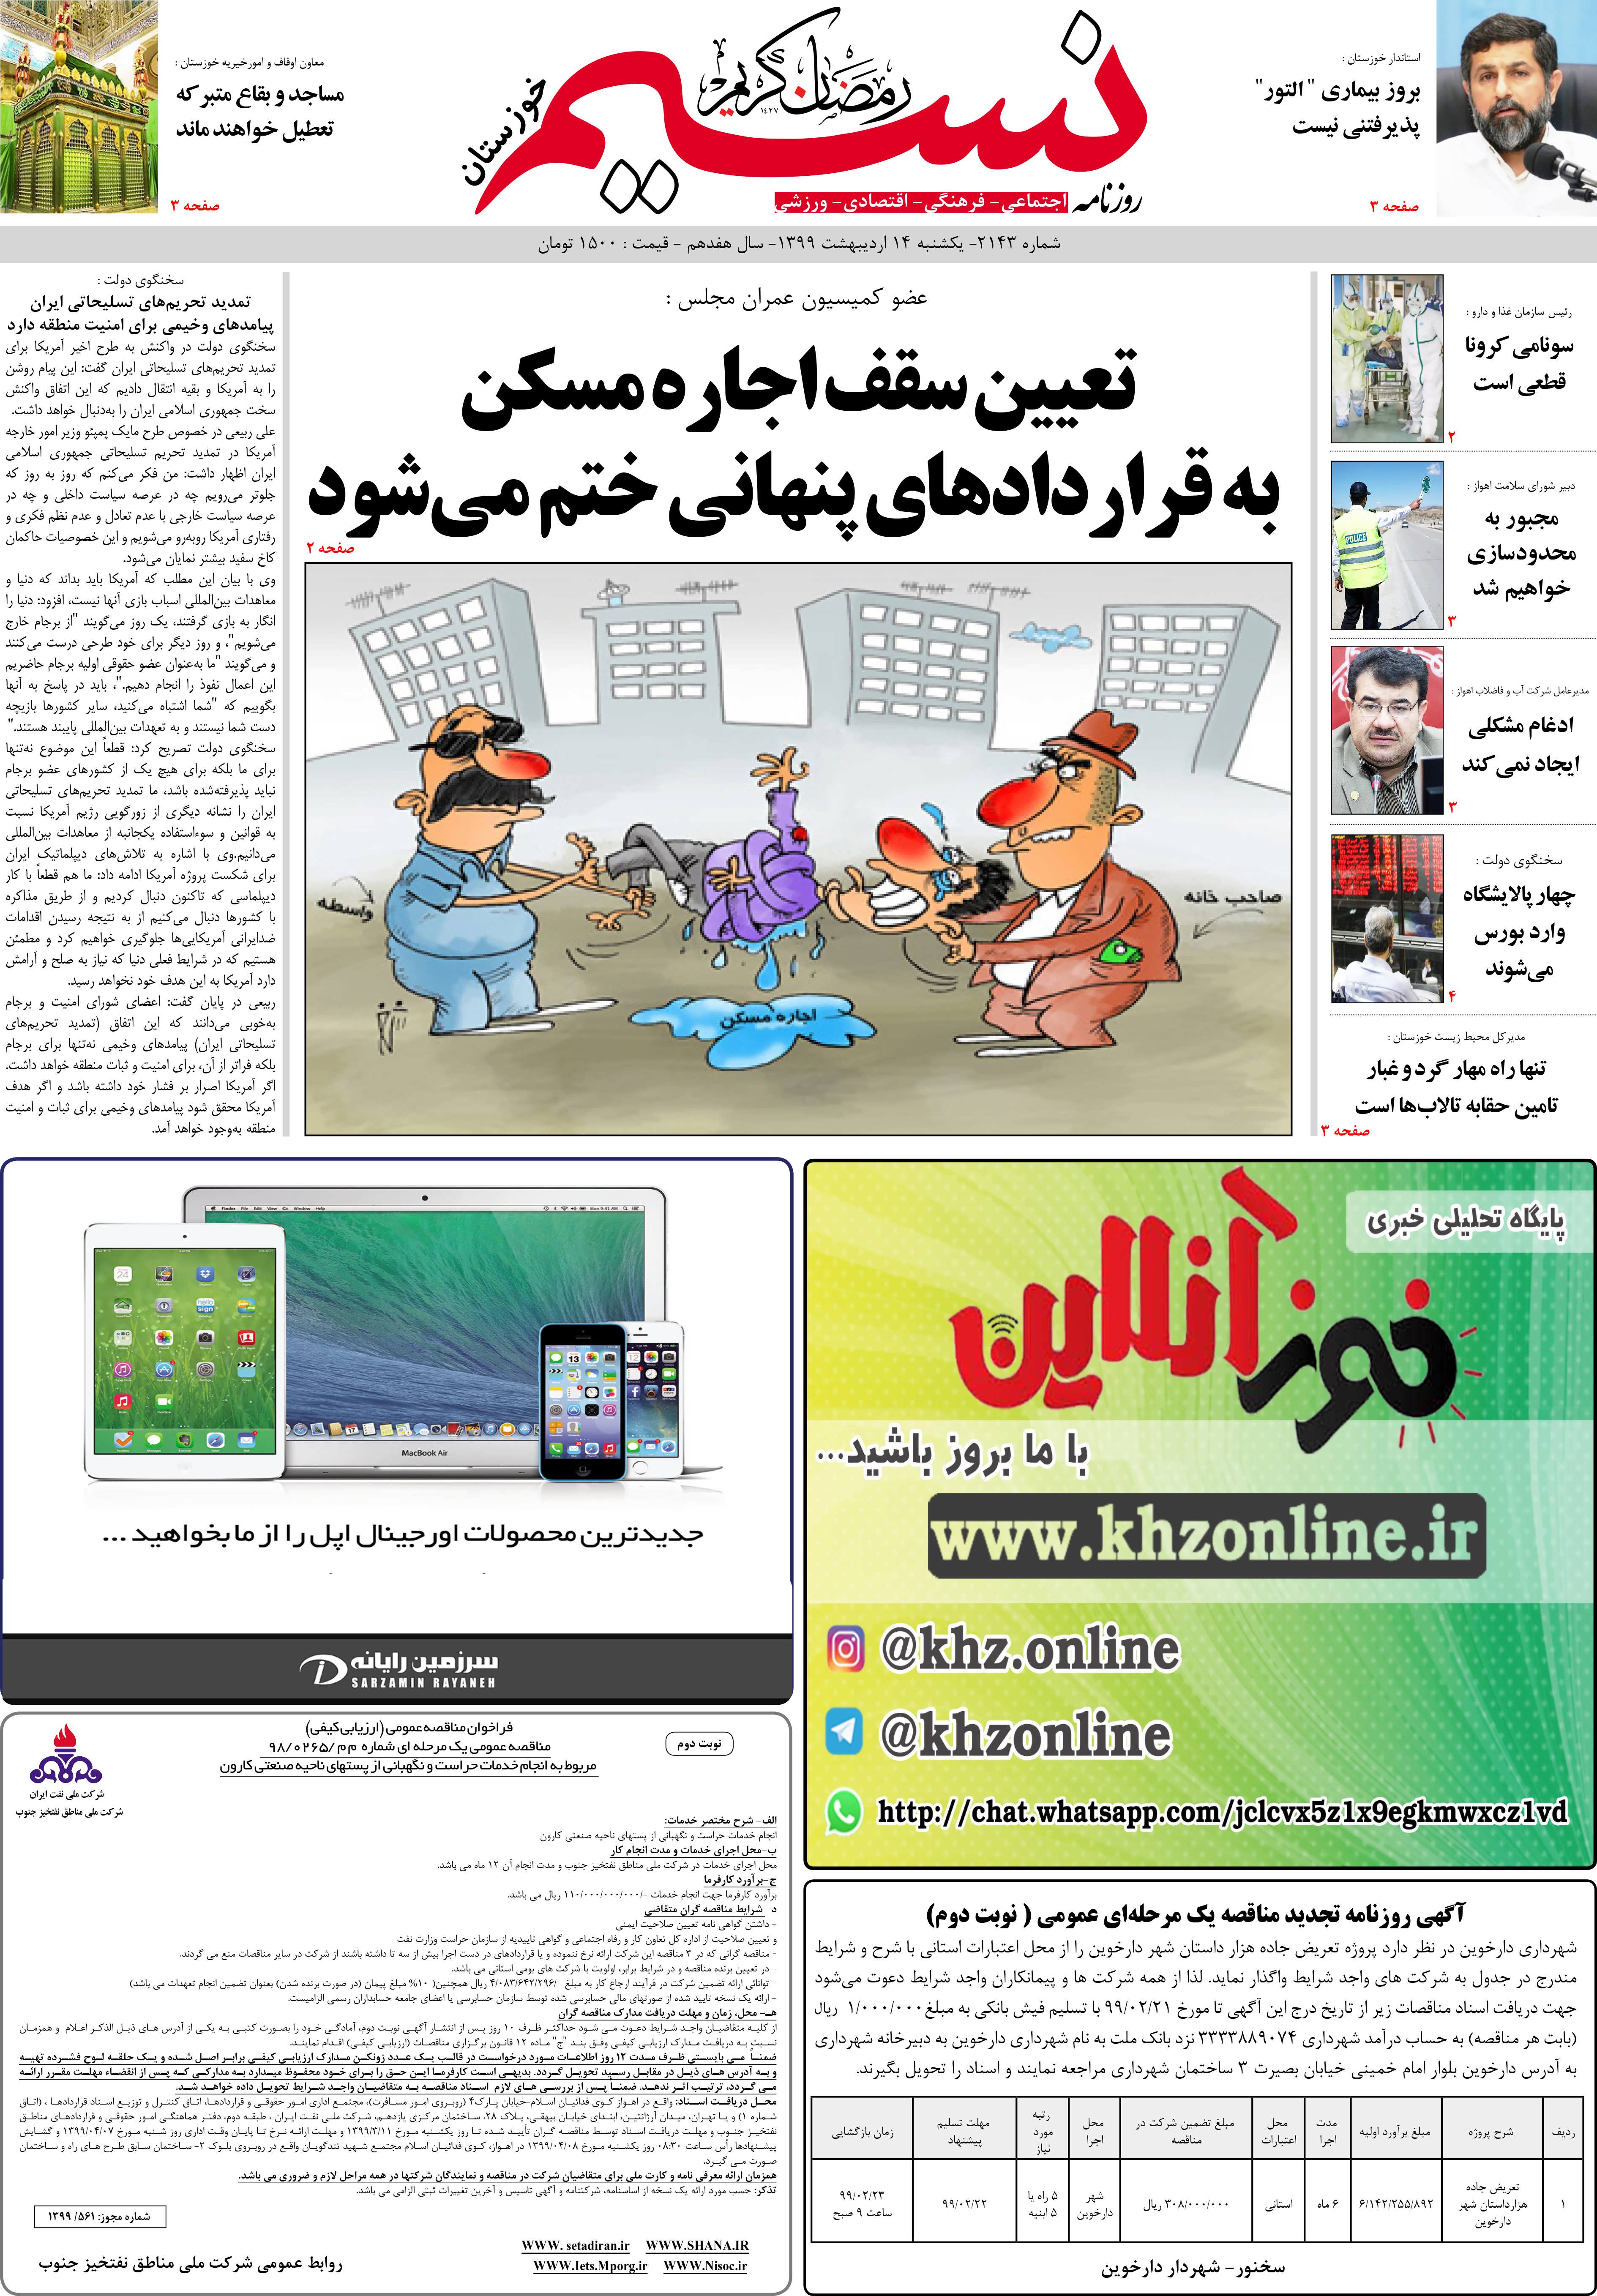 صفحه اصلی روزنامه نسیم شماره 2143 